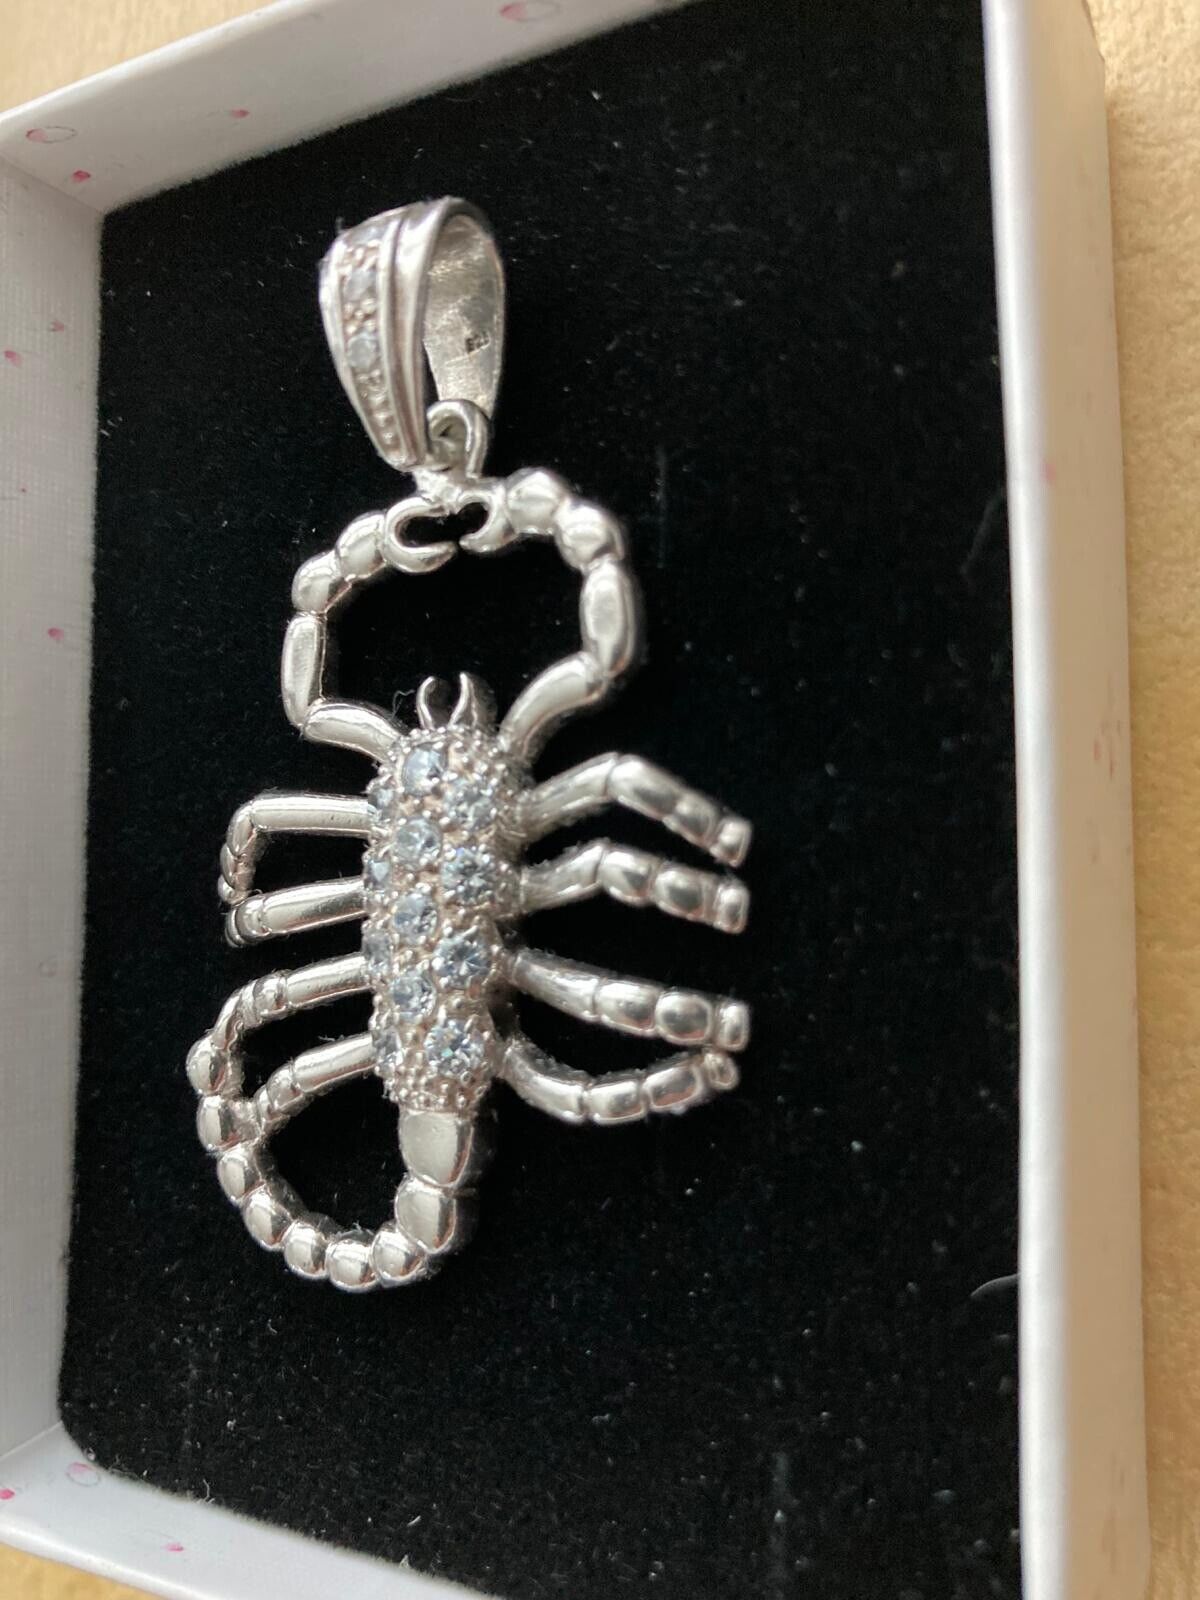 NEW 925 Silver & Zirconia Stones Vintage Scorpion Pendant Fine Jewelry 2.5 Inch